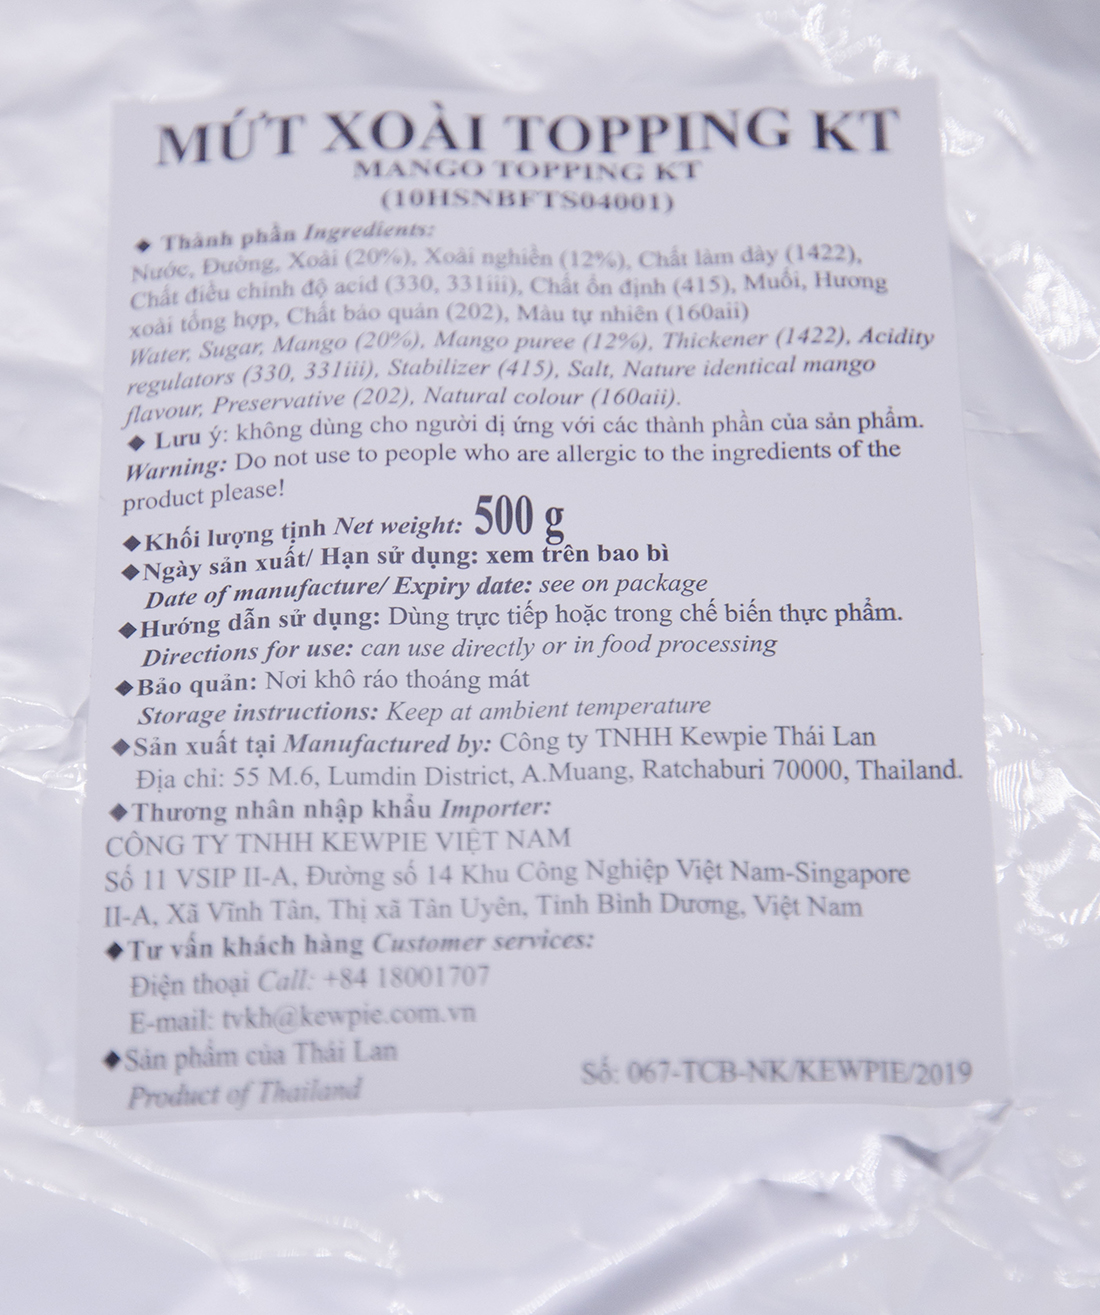 MUT_XOAI_TOPPING_KT